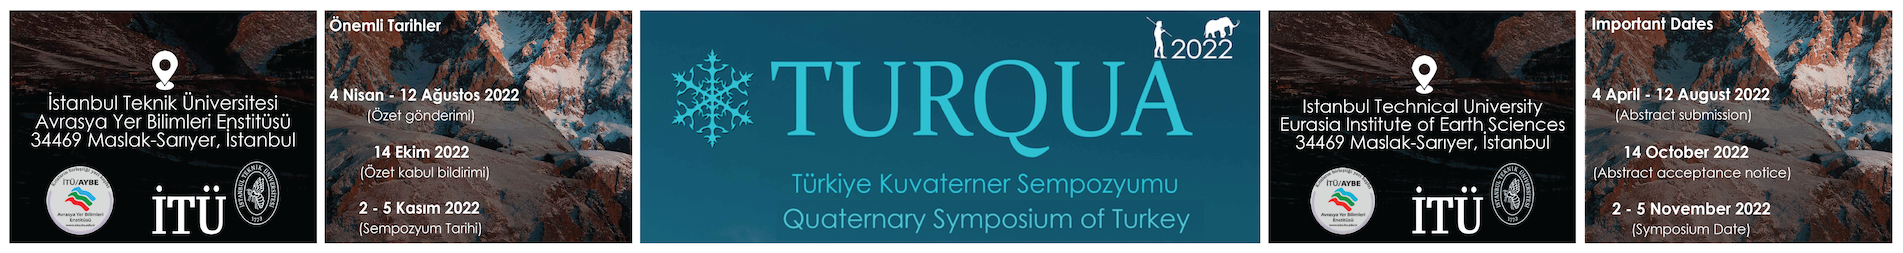 Türkiye Kuvaterner Sempozyumu (Quaternary Symposium of Turkey)